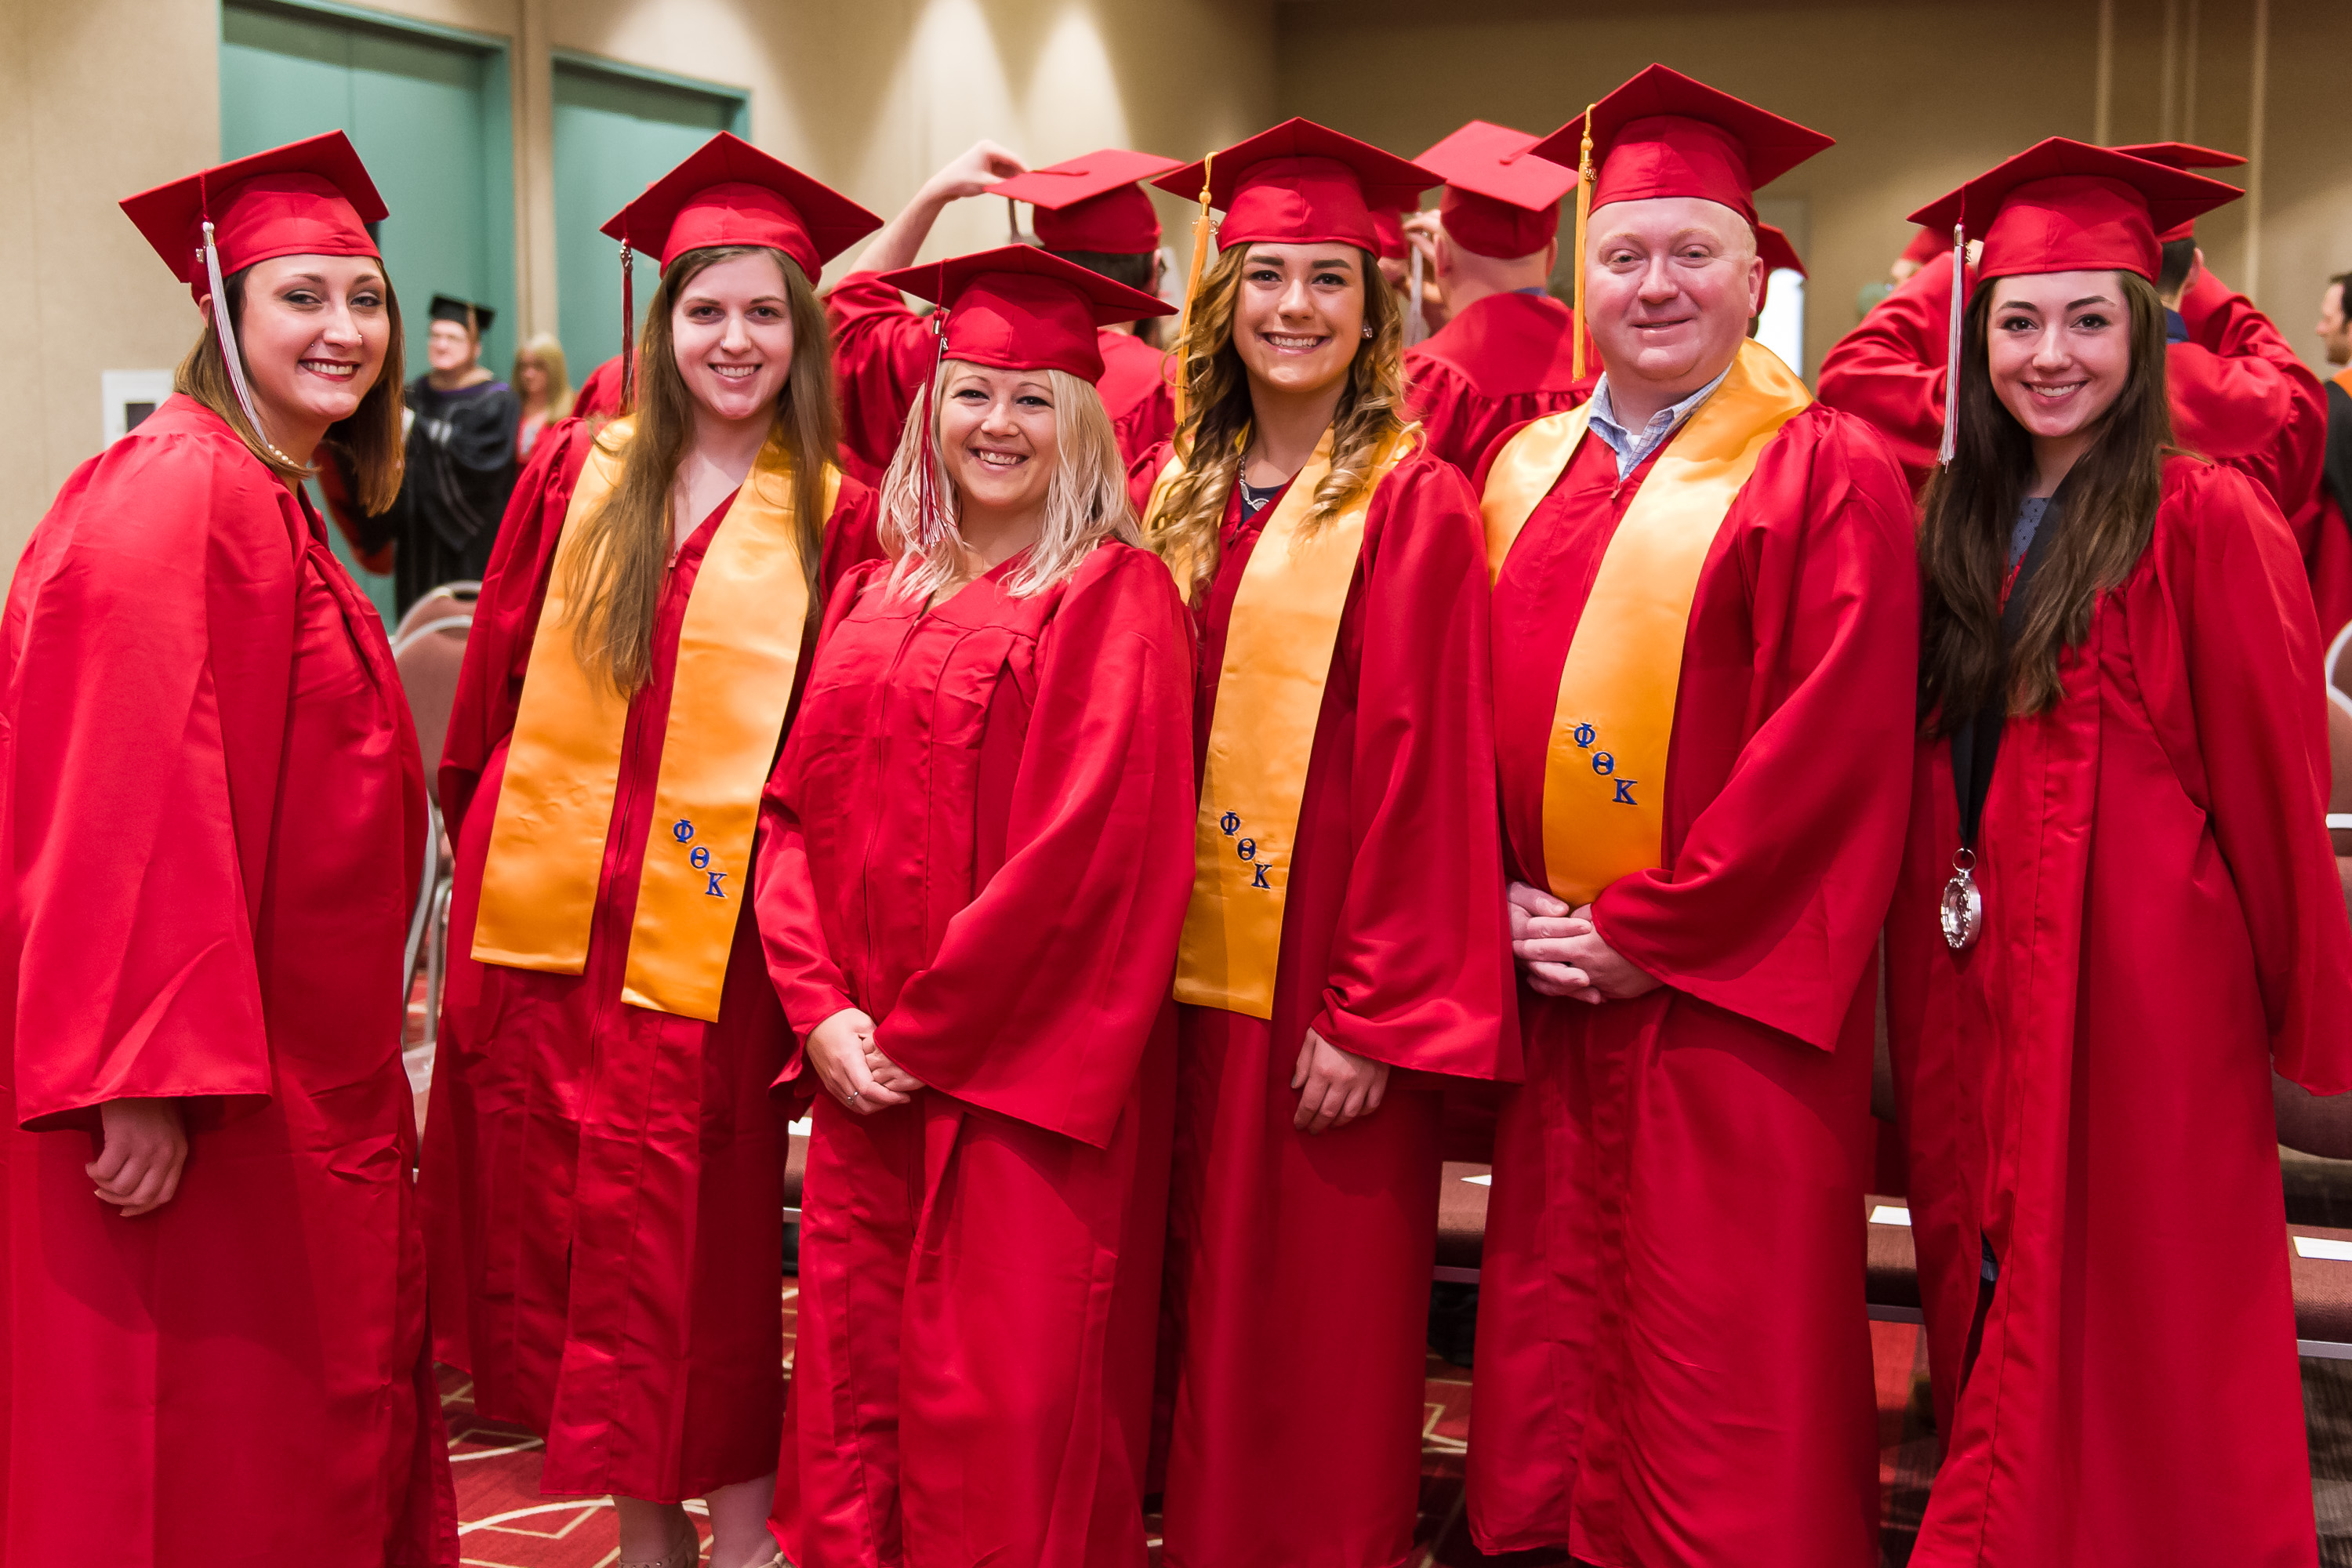 Group photo at Graduation